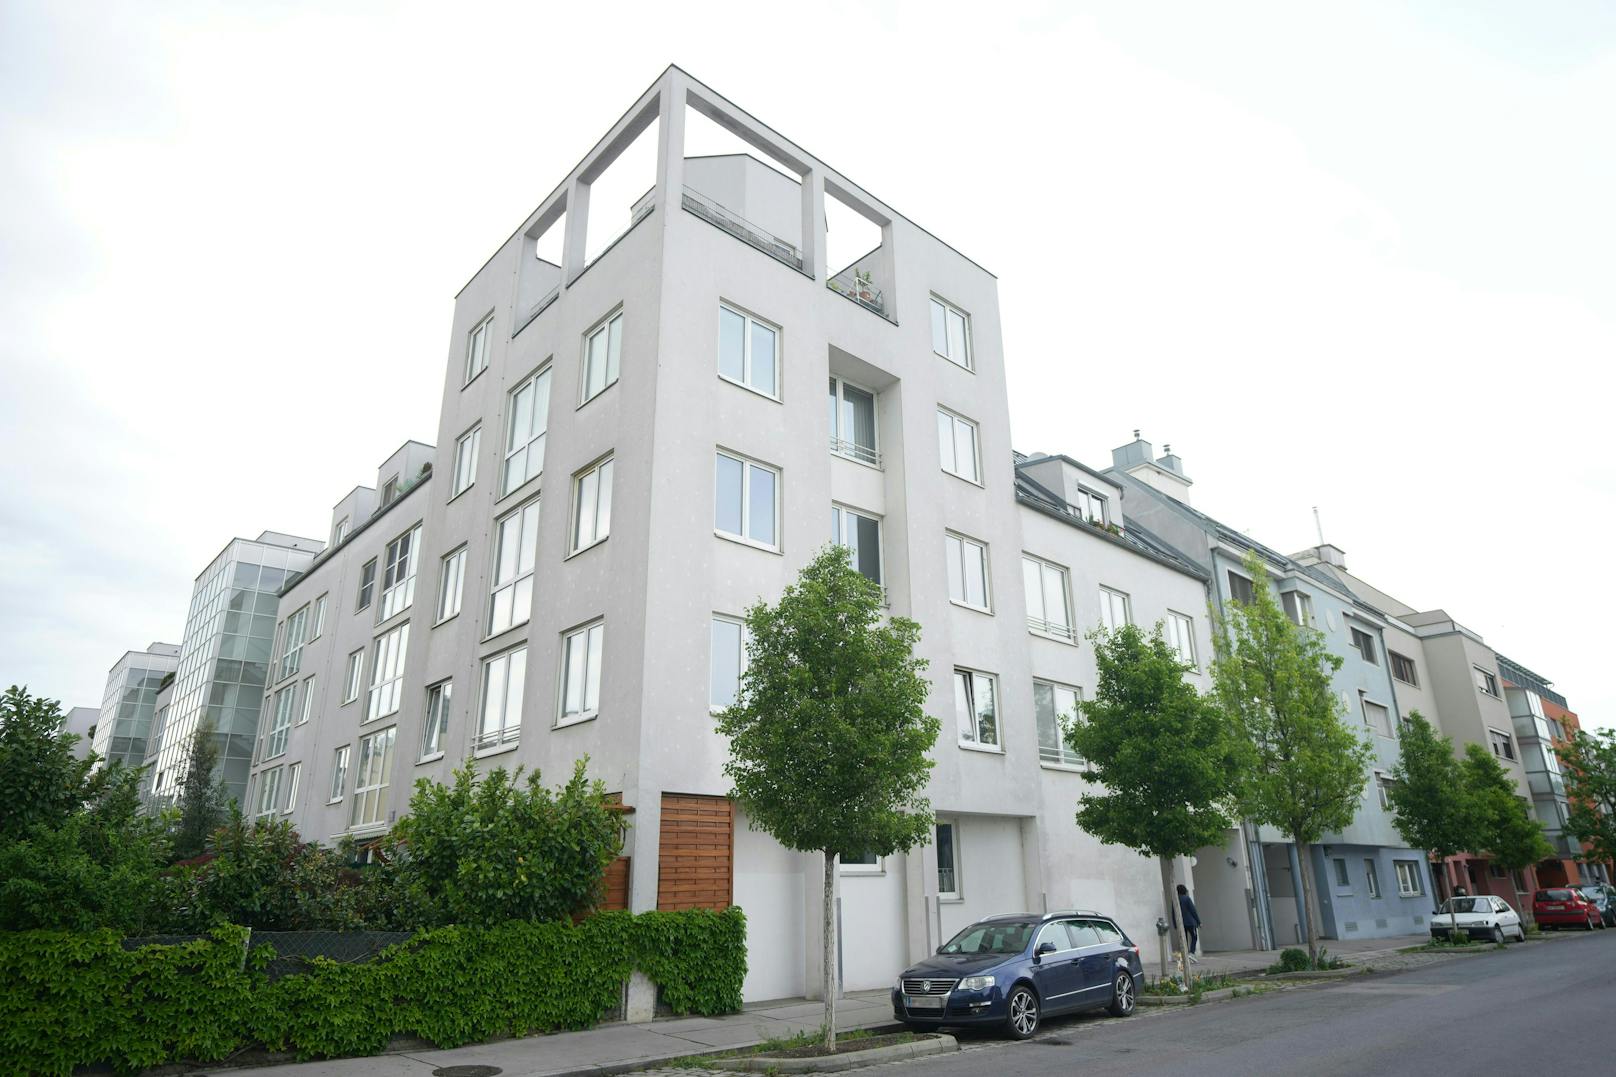 Eine 36-jährige Frau ist Mittwochfrüh, 12. Mai 2021, in einer Wohnung in diesem Mehrparteienhaus in Wien-Simmering tot aufgefunden worden.